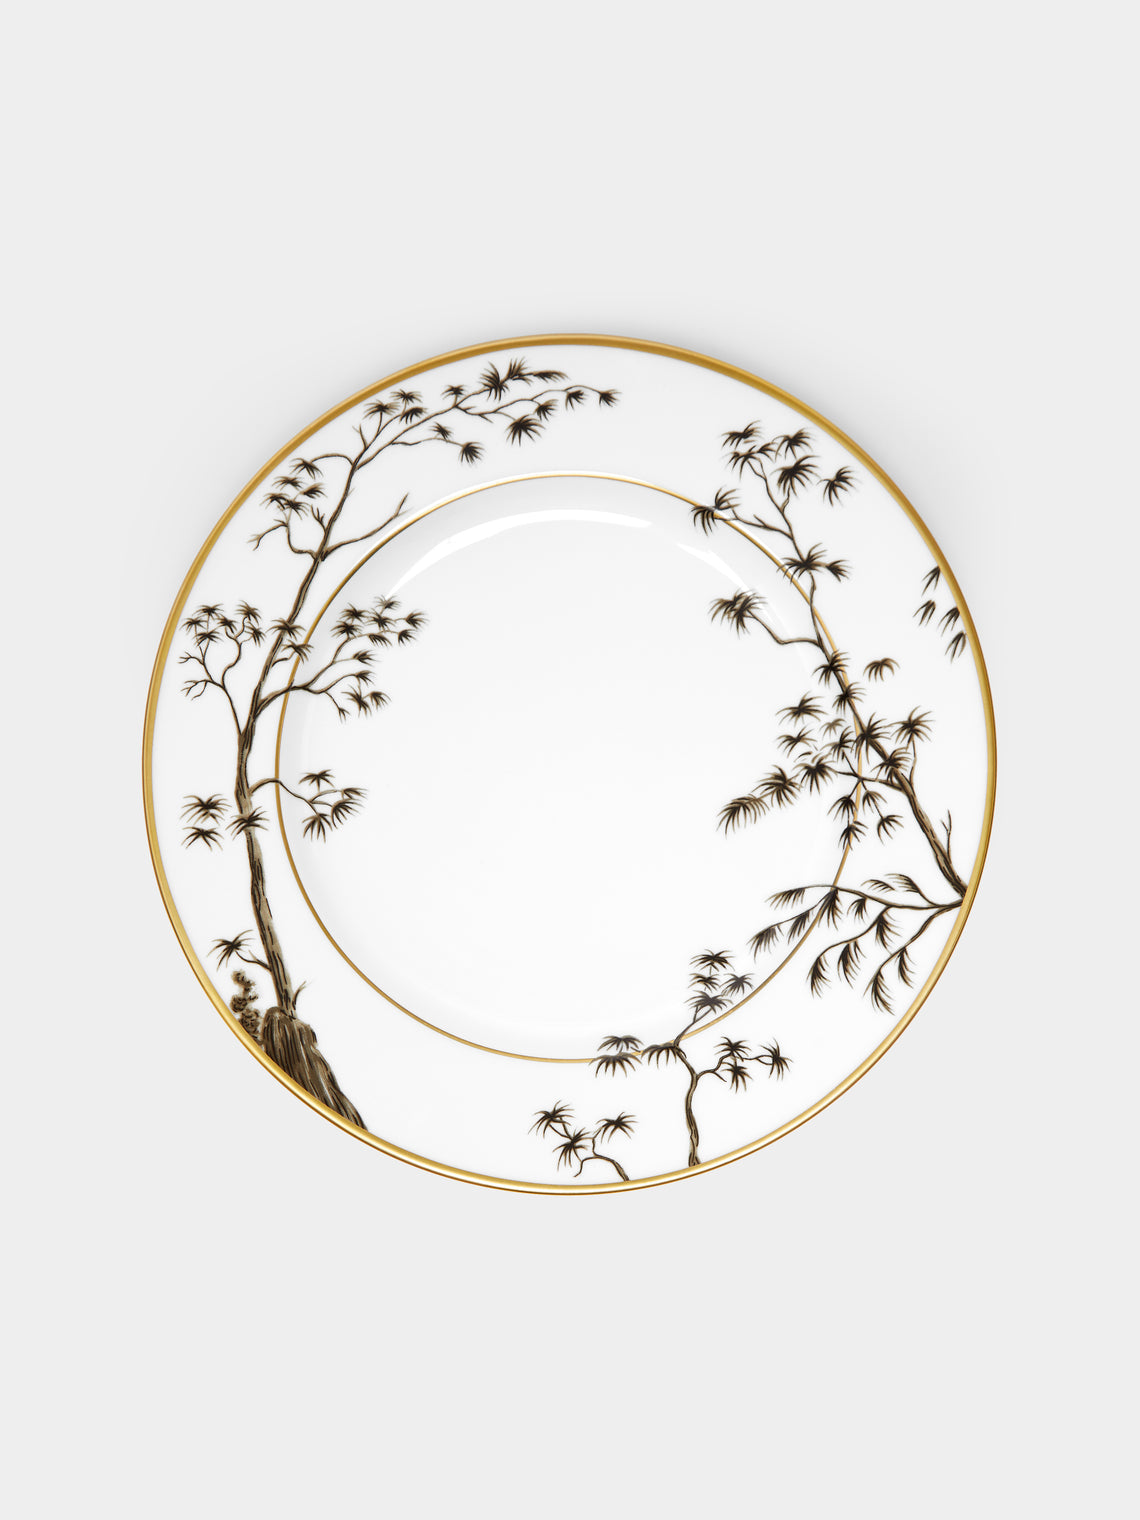 Pinto Paris - Vieux Kyoto Porcelain Dinner Plate -  - ABASK - 